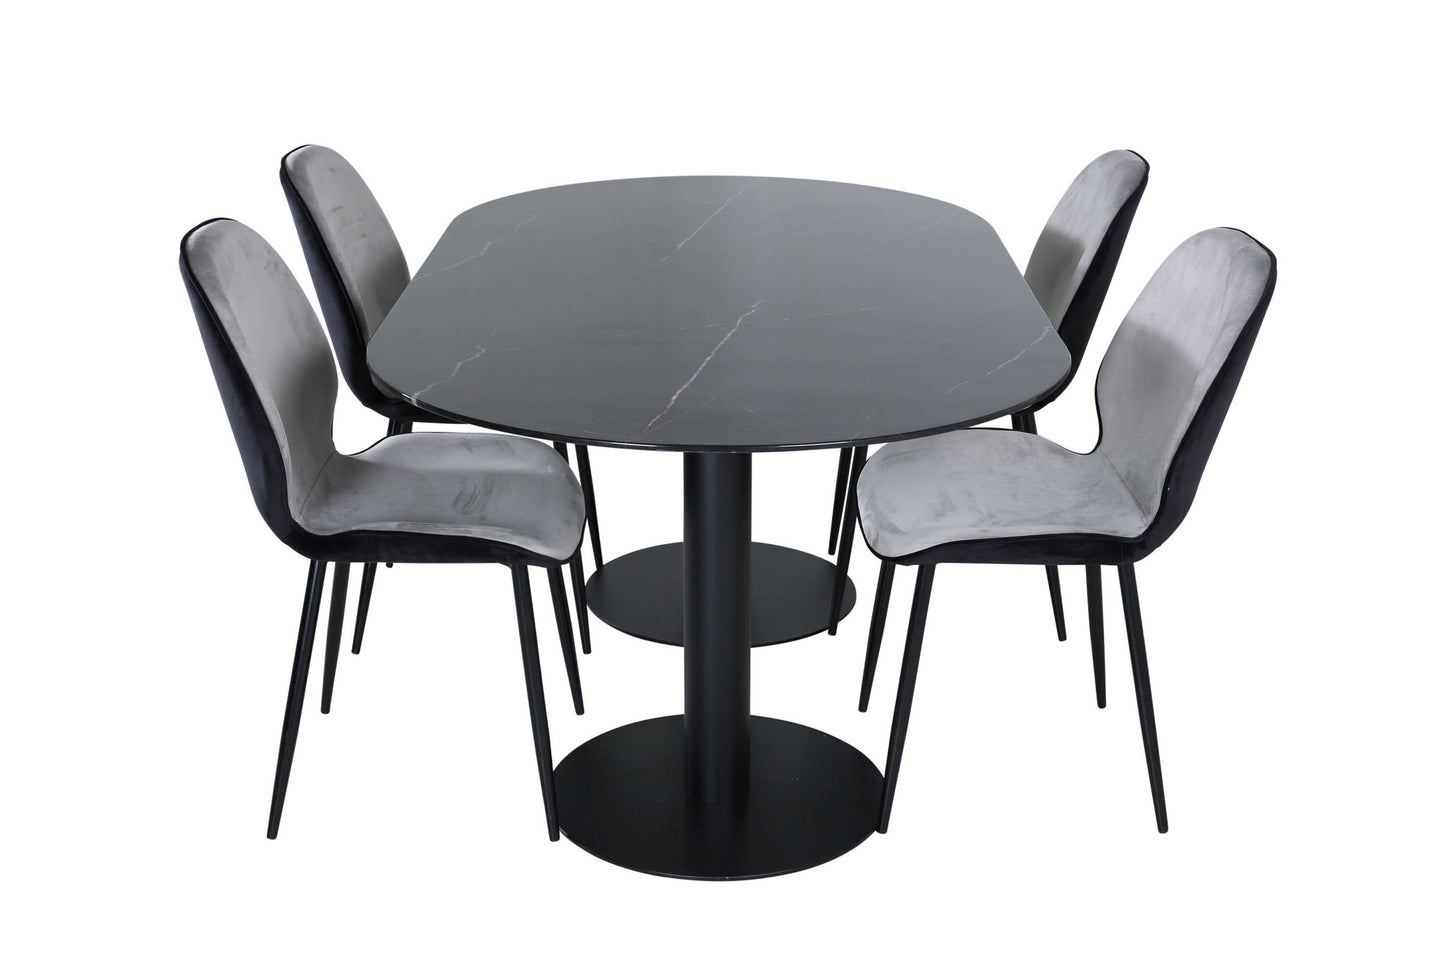 Pillan - Ovalt spisebord, Sort glas Marmor+Emma Stol, Sort og Lysegrå Sort velour i Back Grå velour i front